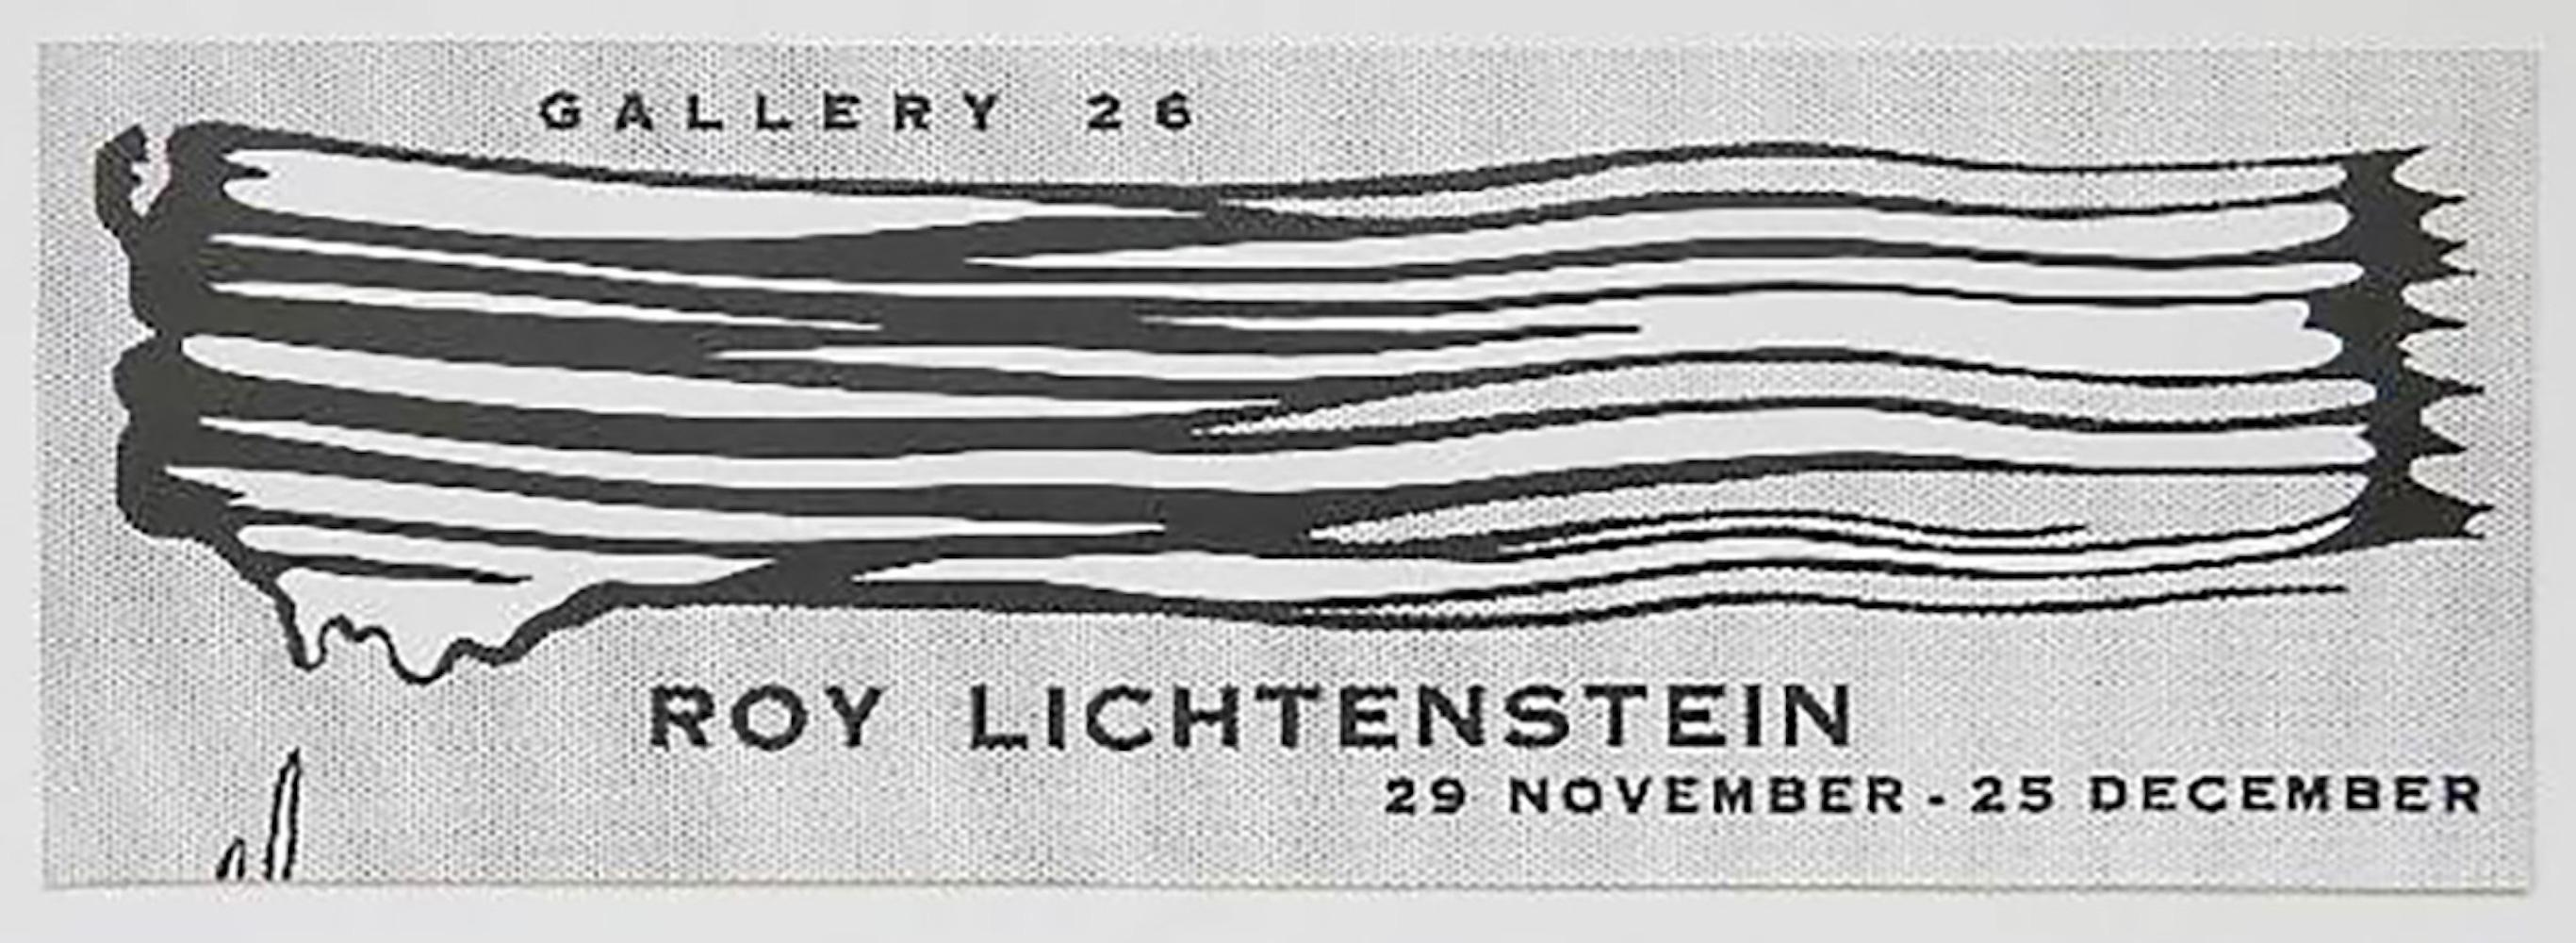 Gallery 26 Exhibition Poster - Pop Art Print by Roy Lichtenstein